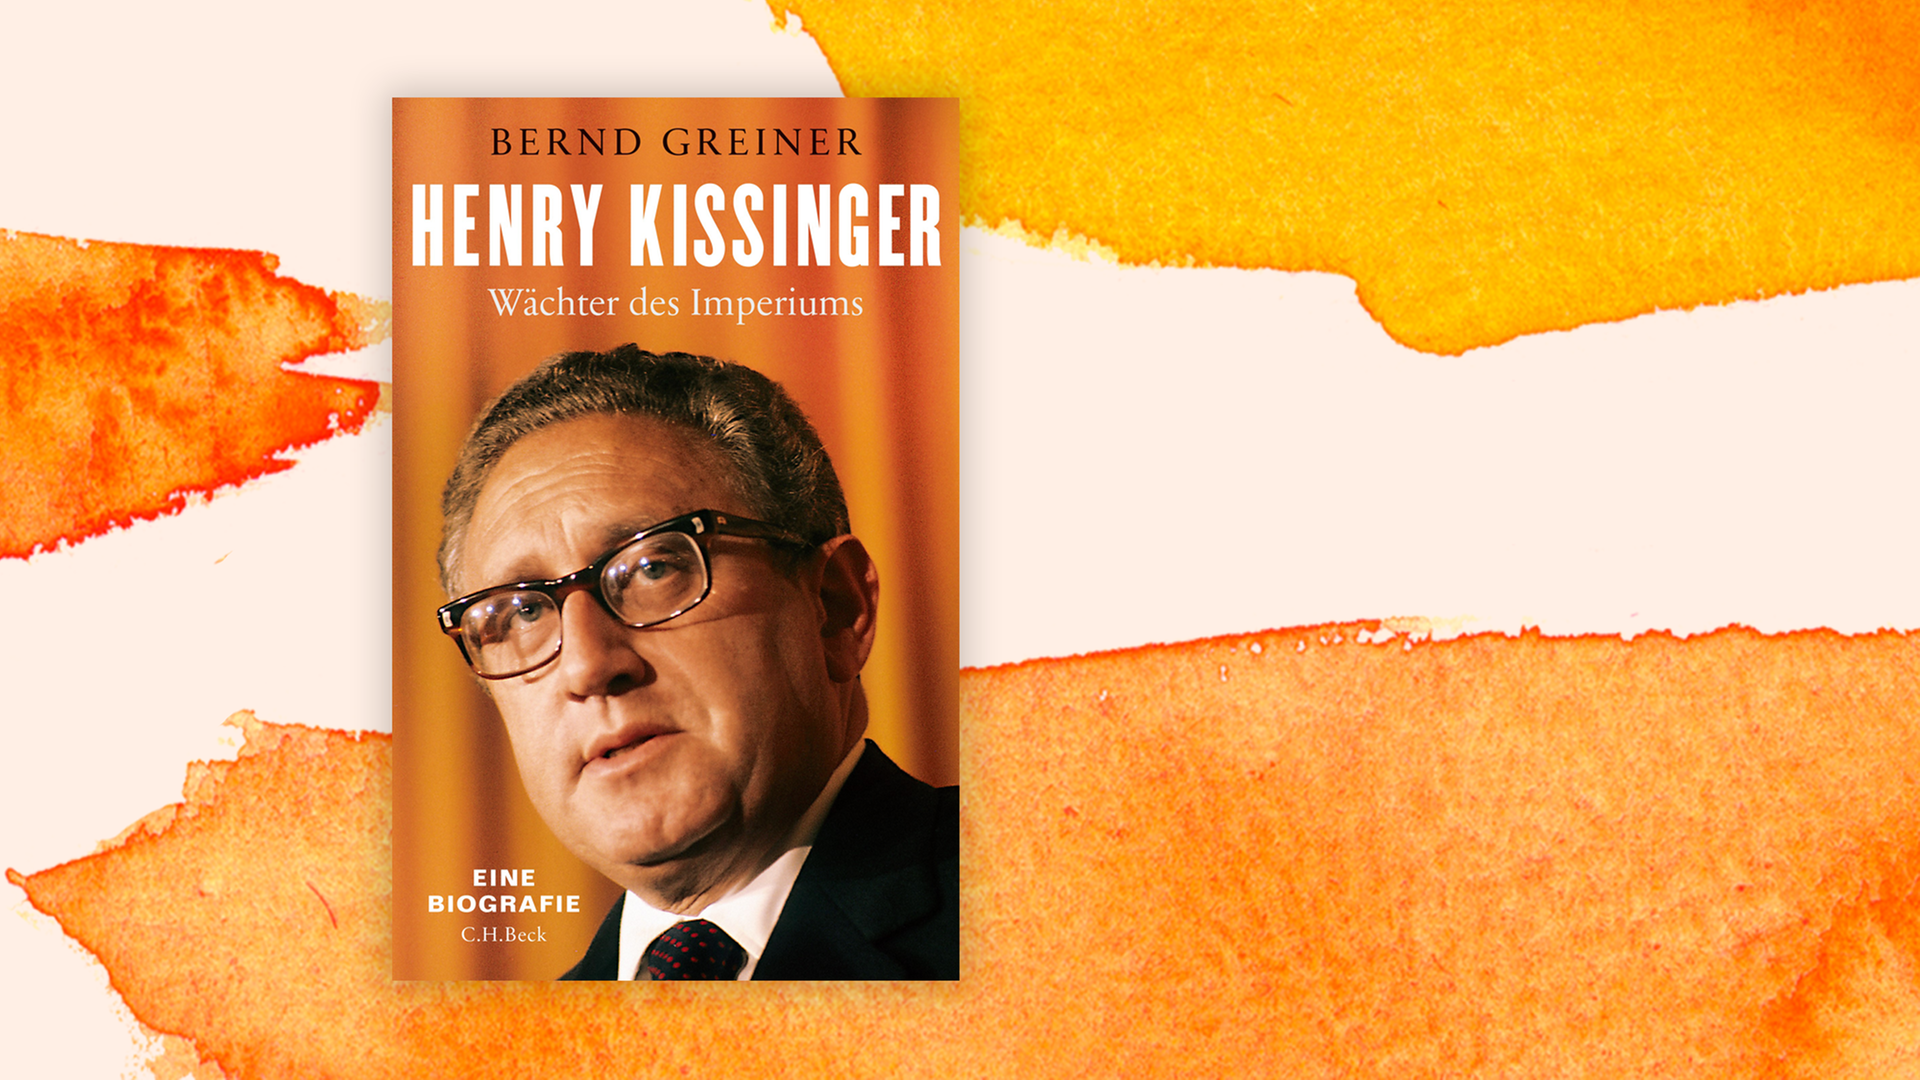 Zu sehen ist das Cover "Henry Kissinger. Wächter des Imperiums" von Bernd Greiner.